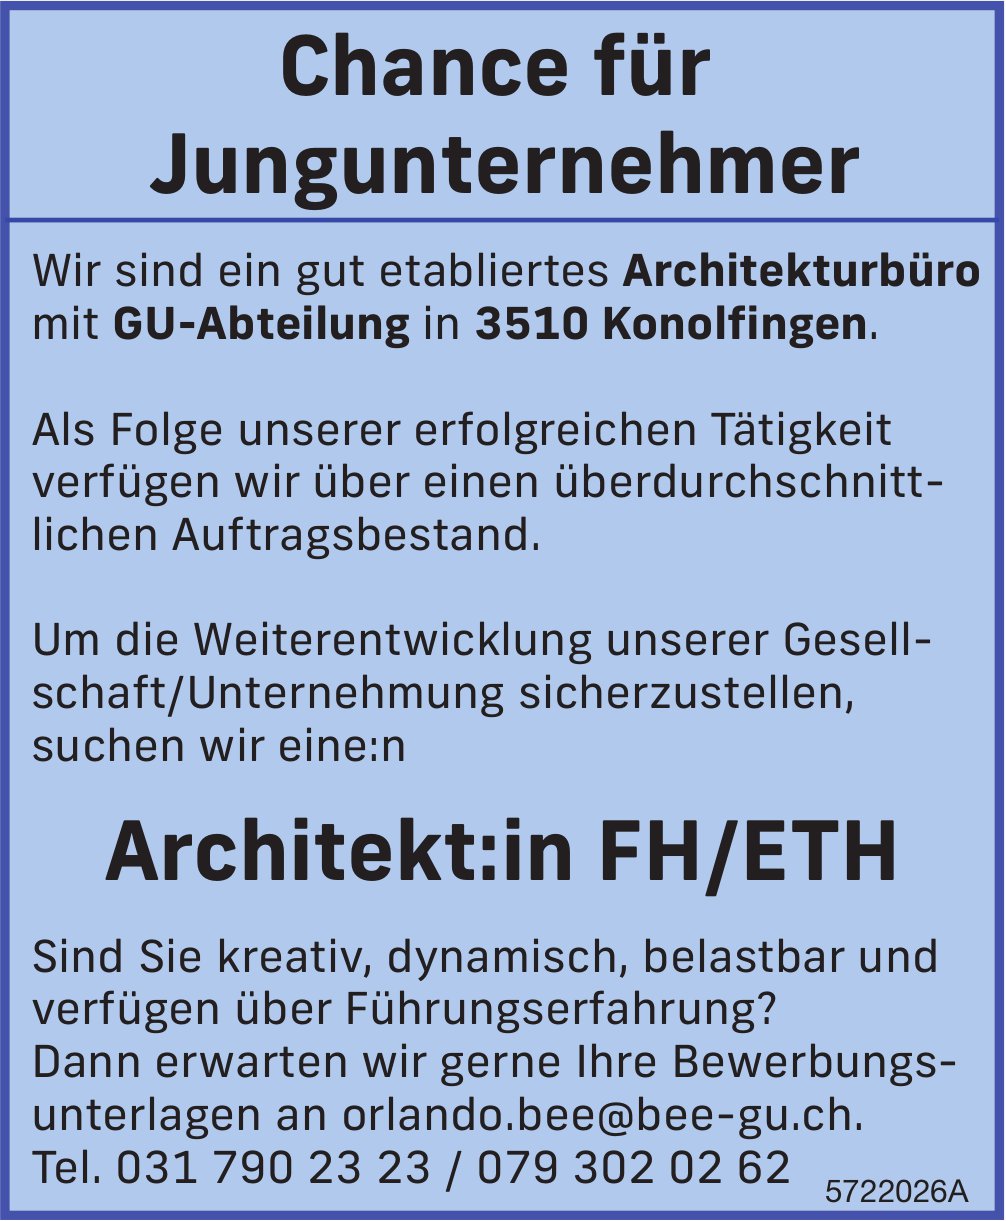 Architekt:in FH/ETH, Architekturbüro mit GU-Abteilung, Konolfingen, gesucht